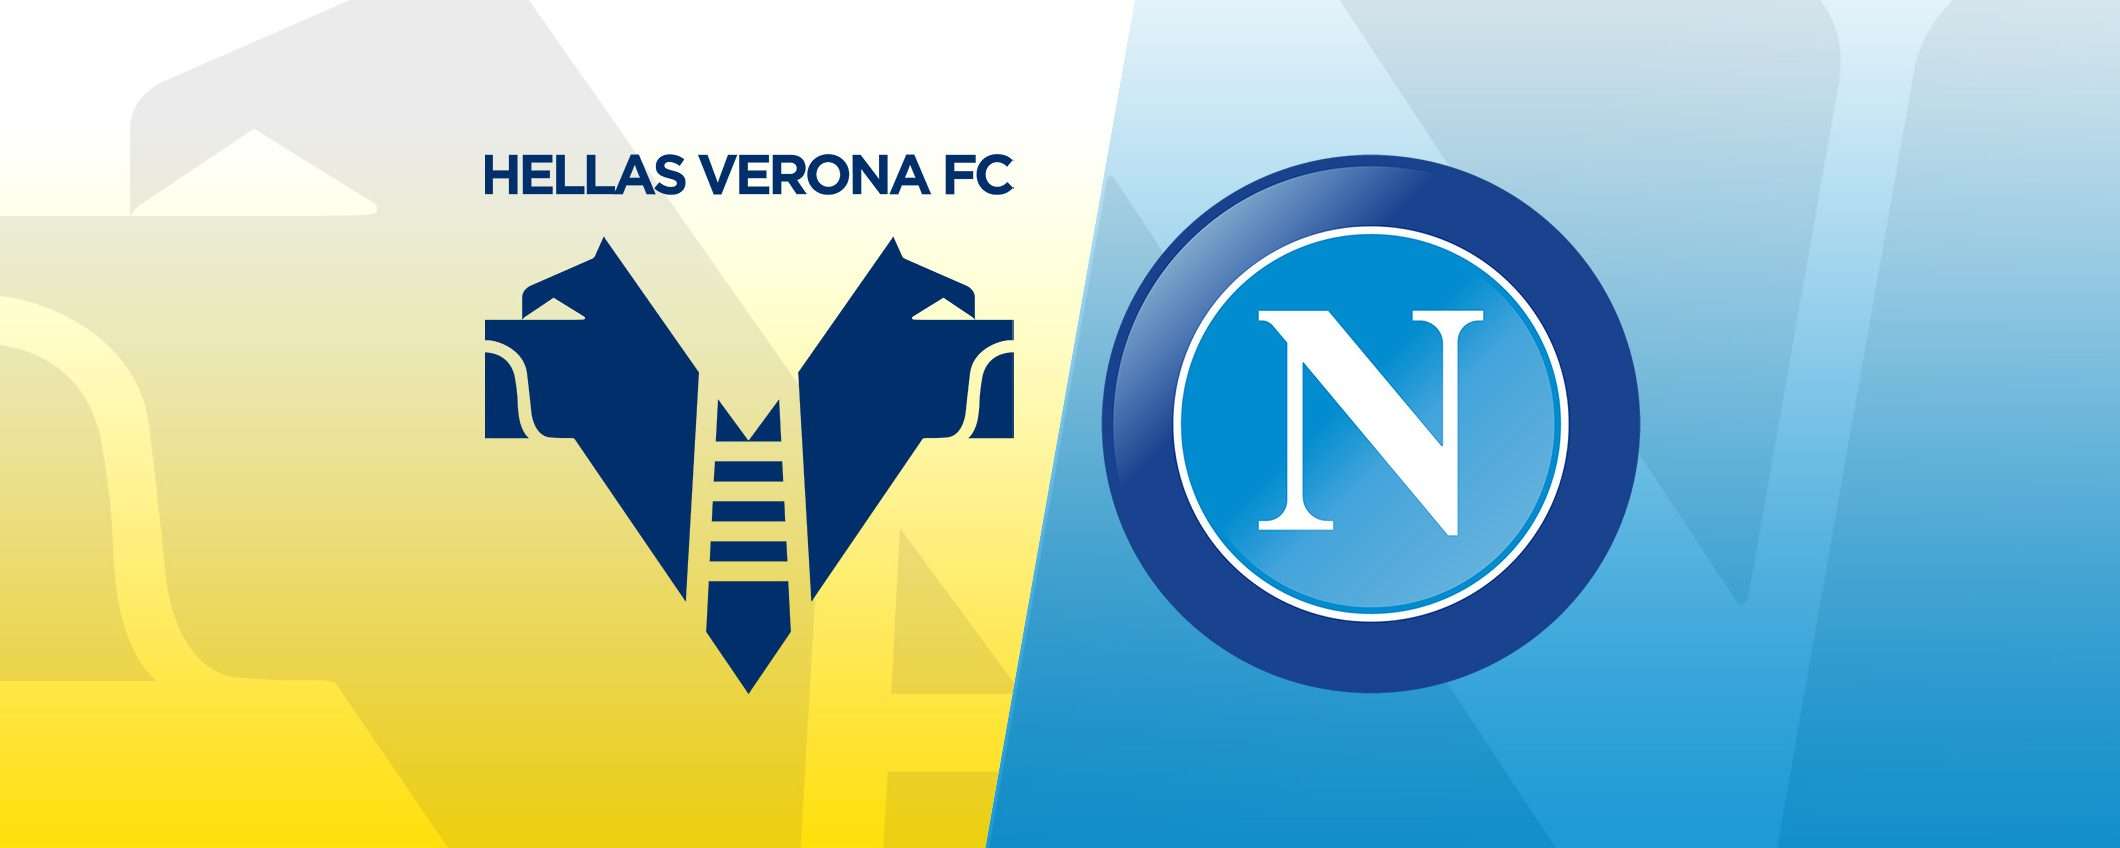 Come vedere Verona-Napoli in streaming (Serie A)